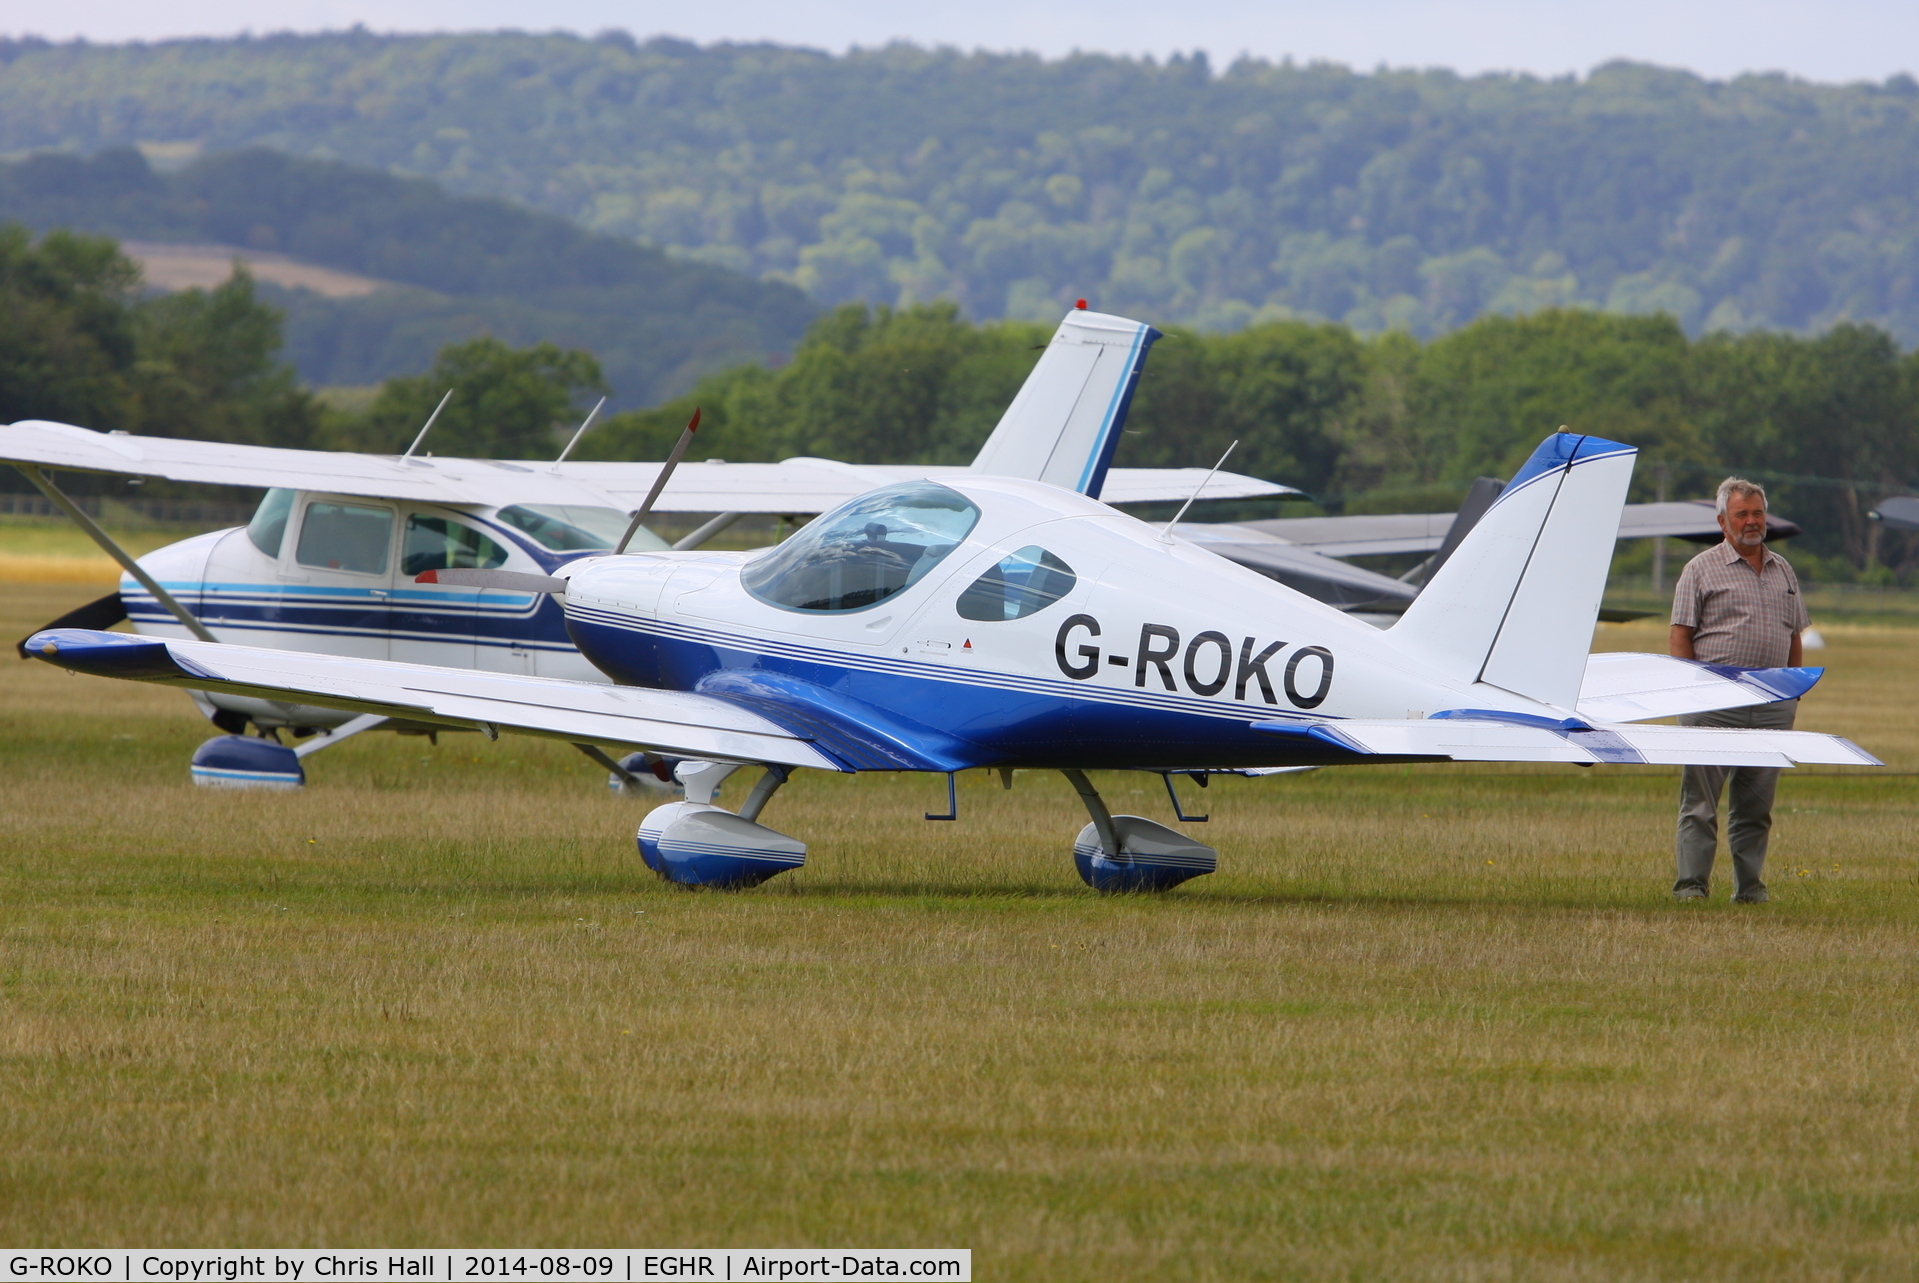 G-ROKO, 2009 Roko Aero NG4 HD C/N 020/2009, at Goodwood airfield